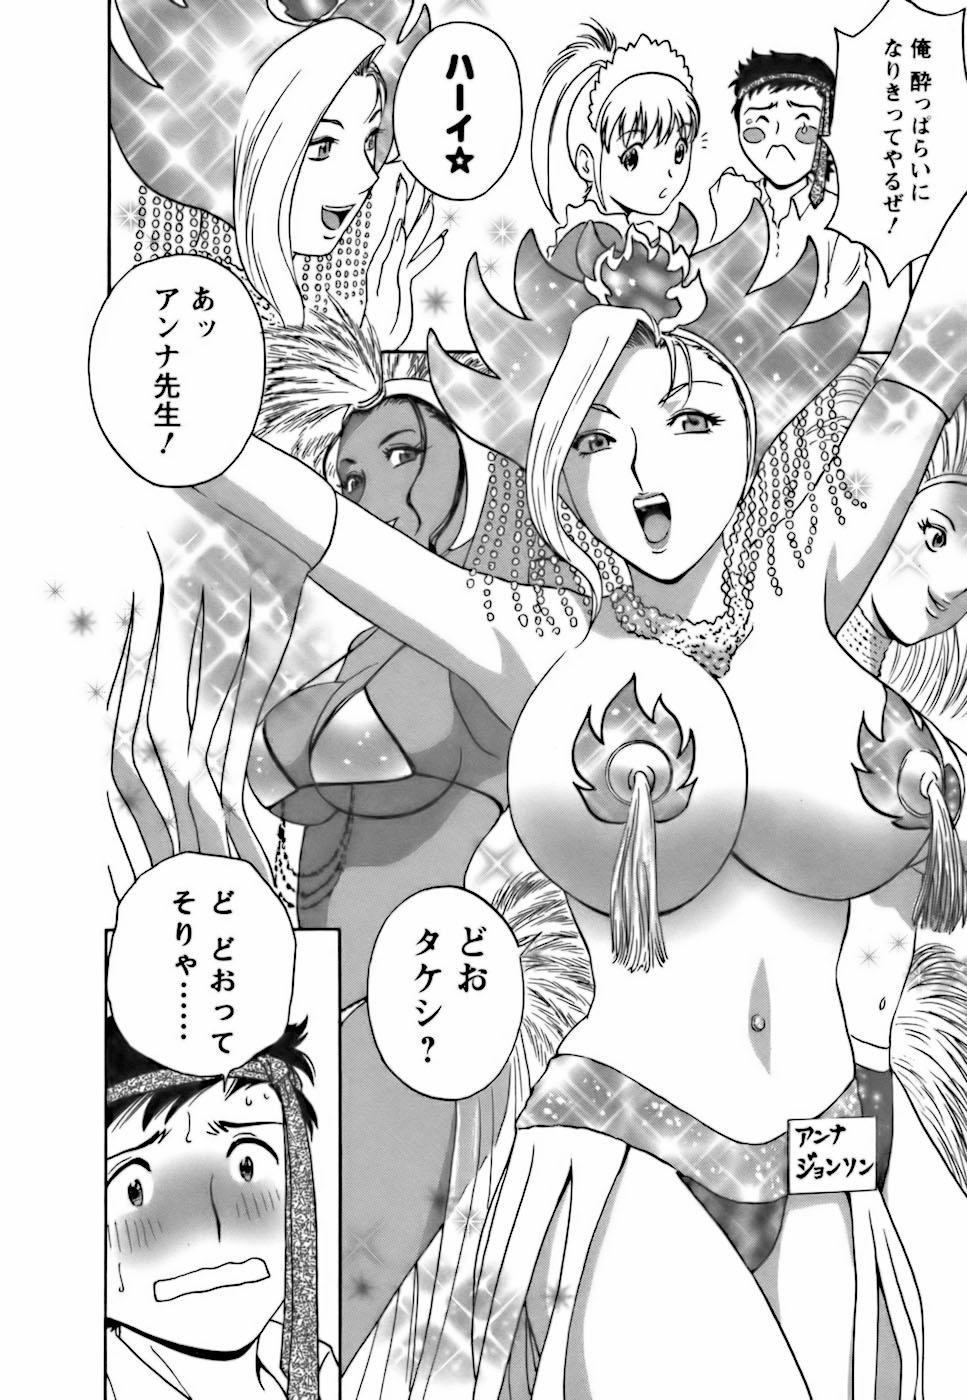 [Hidemaru] Mo-Retsu! Boin Sensei (Boing Boing Teacher) Vol.3 111